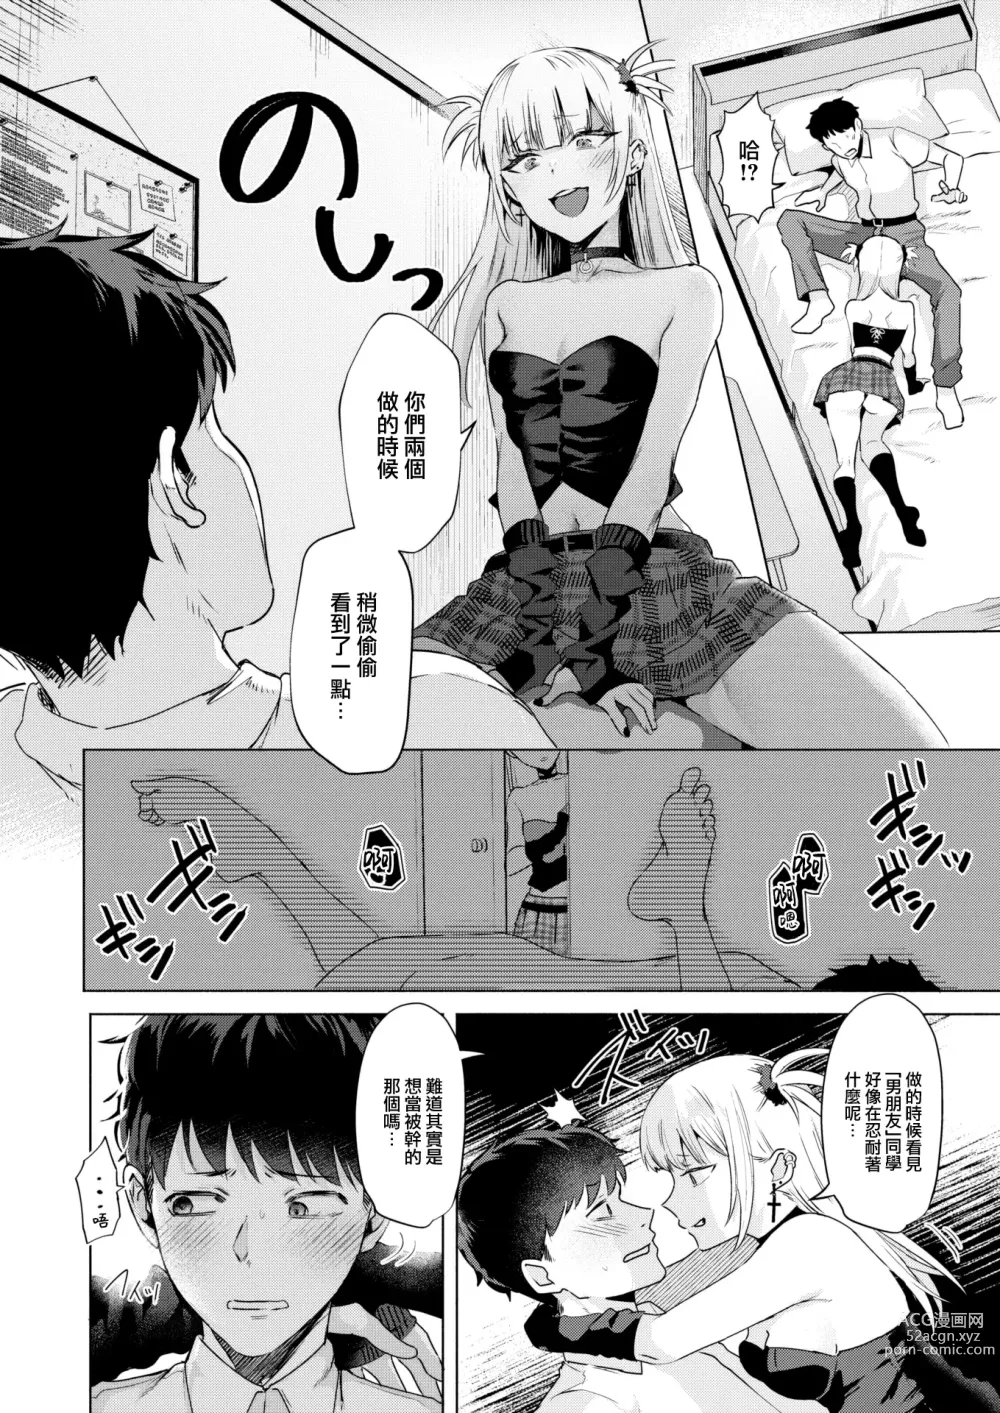 Page 9 of manga Kanojo no Imouto